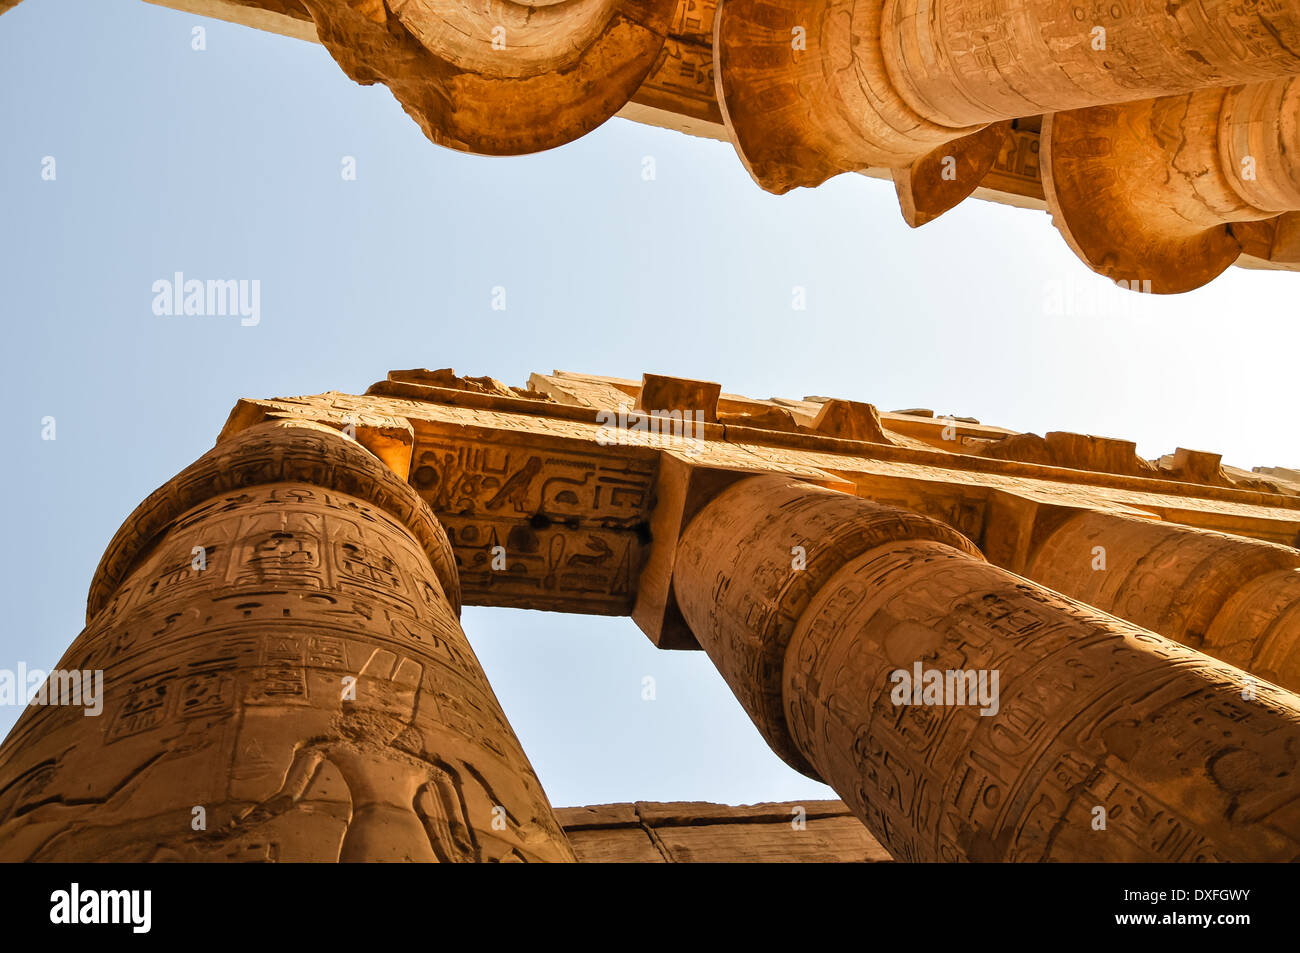 Los pilares de piedra en el templo de Karnak en Luxor, inscritos con jeroglíficos Foto de stock